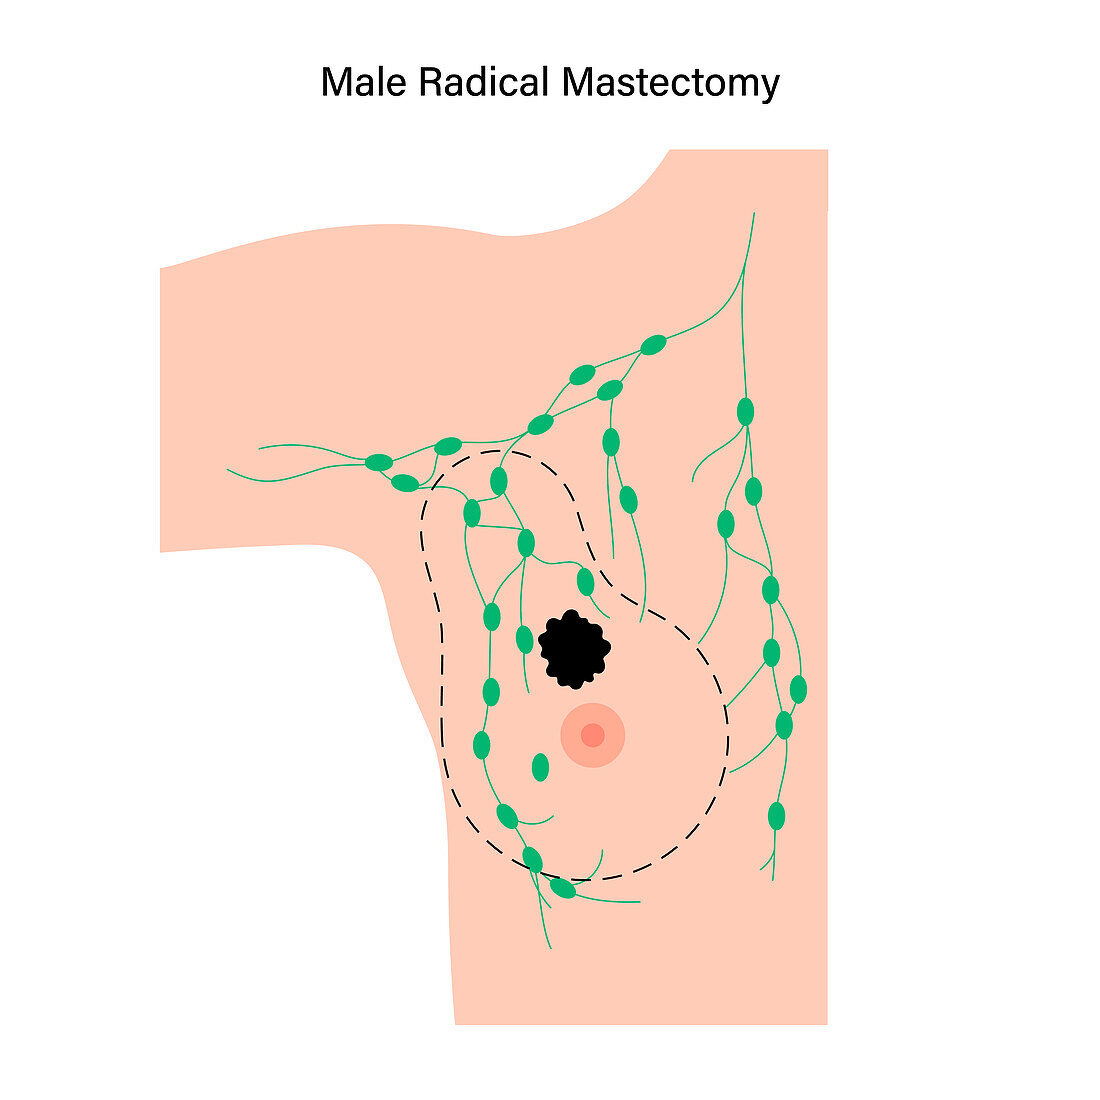 Male radical mastectomy, illustration